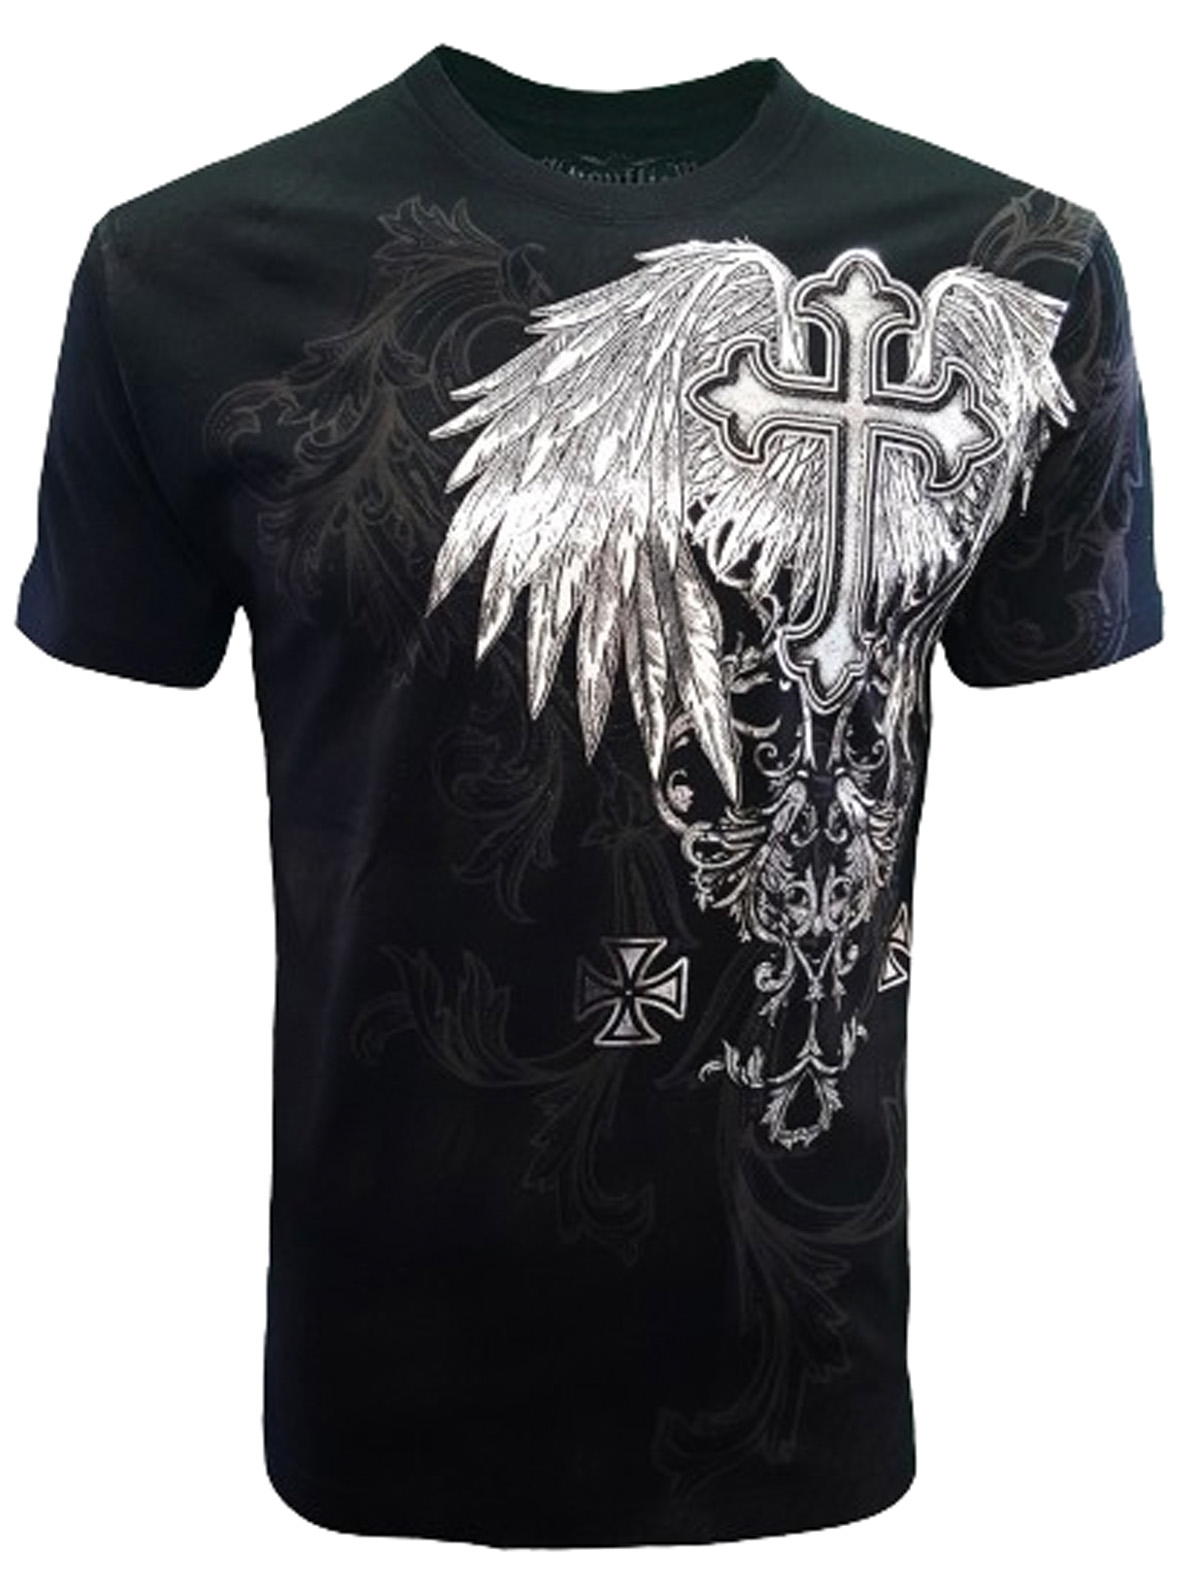 Konflic [FOREVER] T-Shirt Cross Wings Biker Tribal Rocker MMA UFC Fight ...